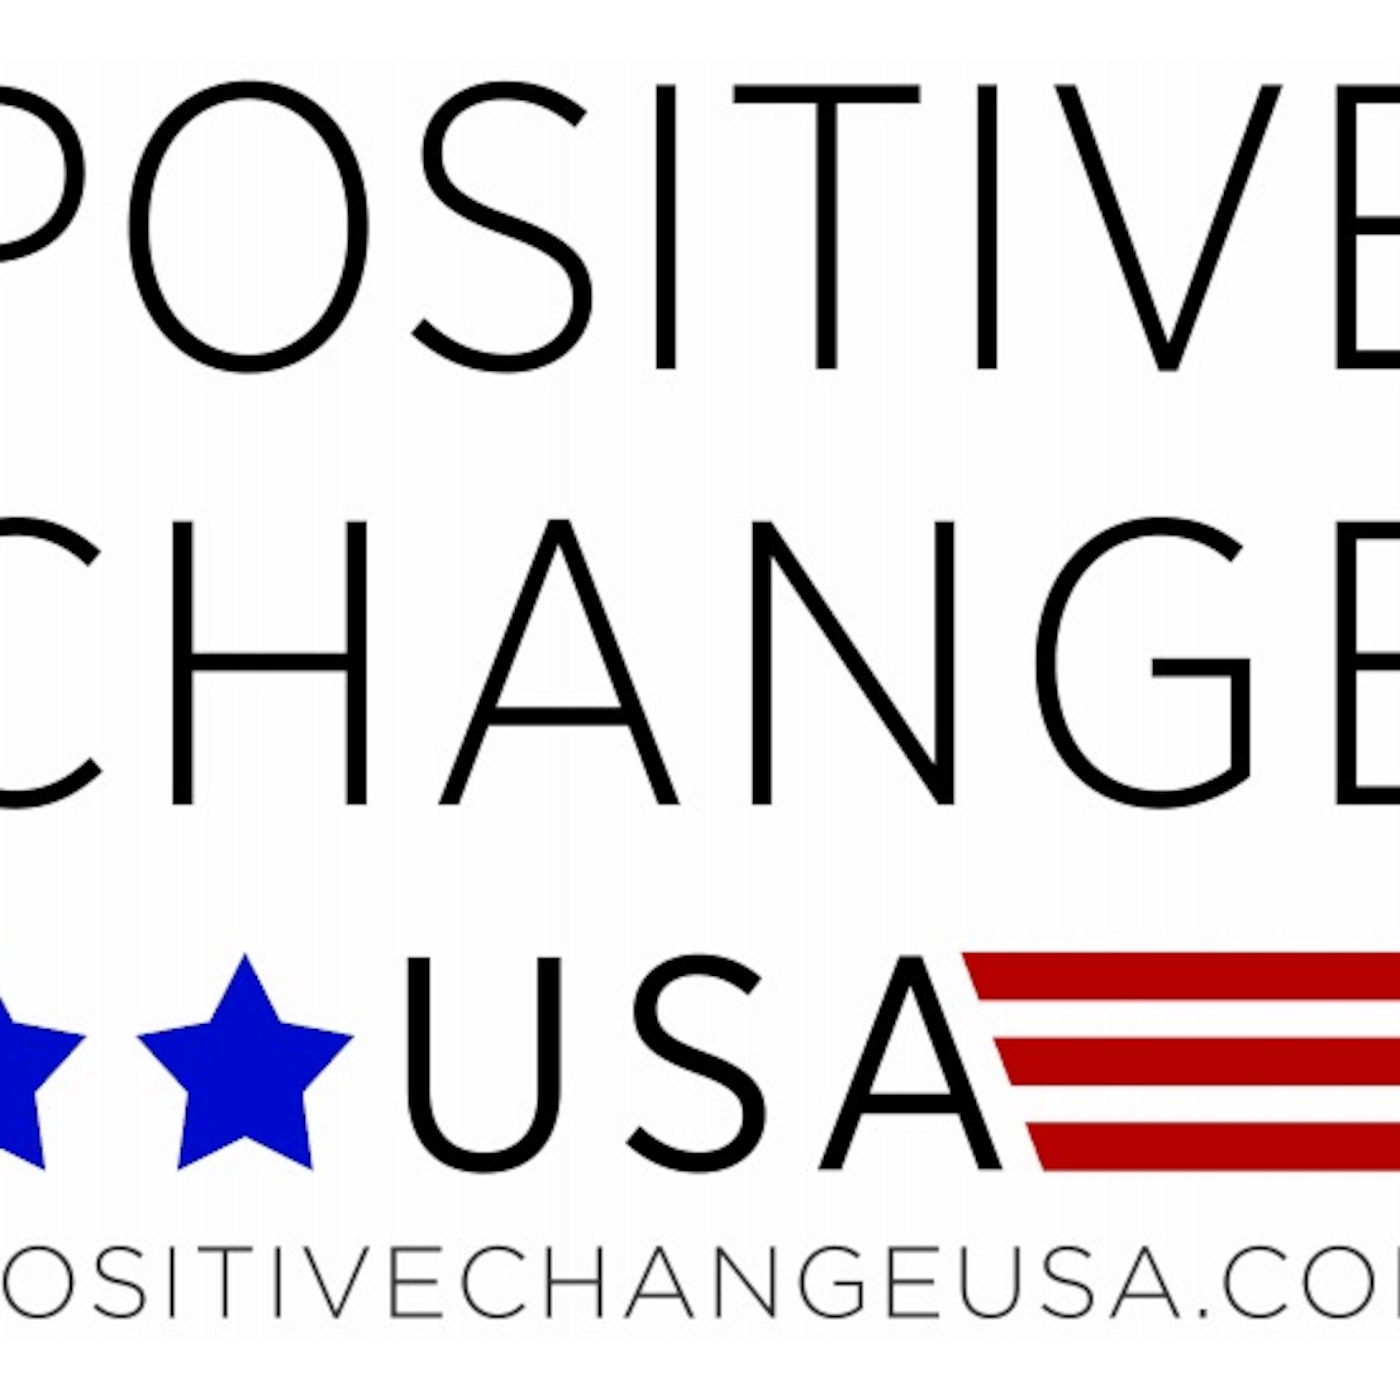 Positive Change USA Dating